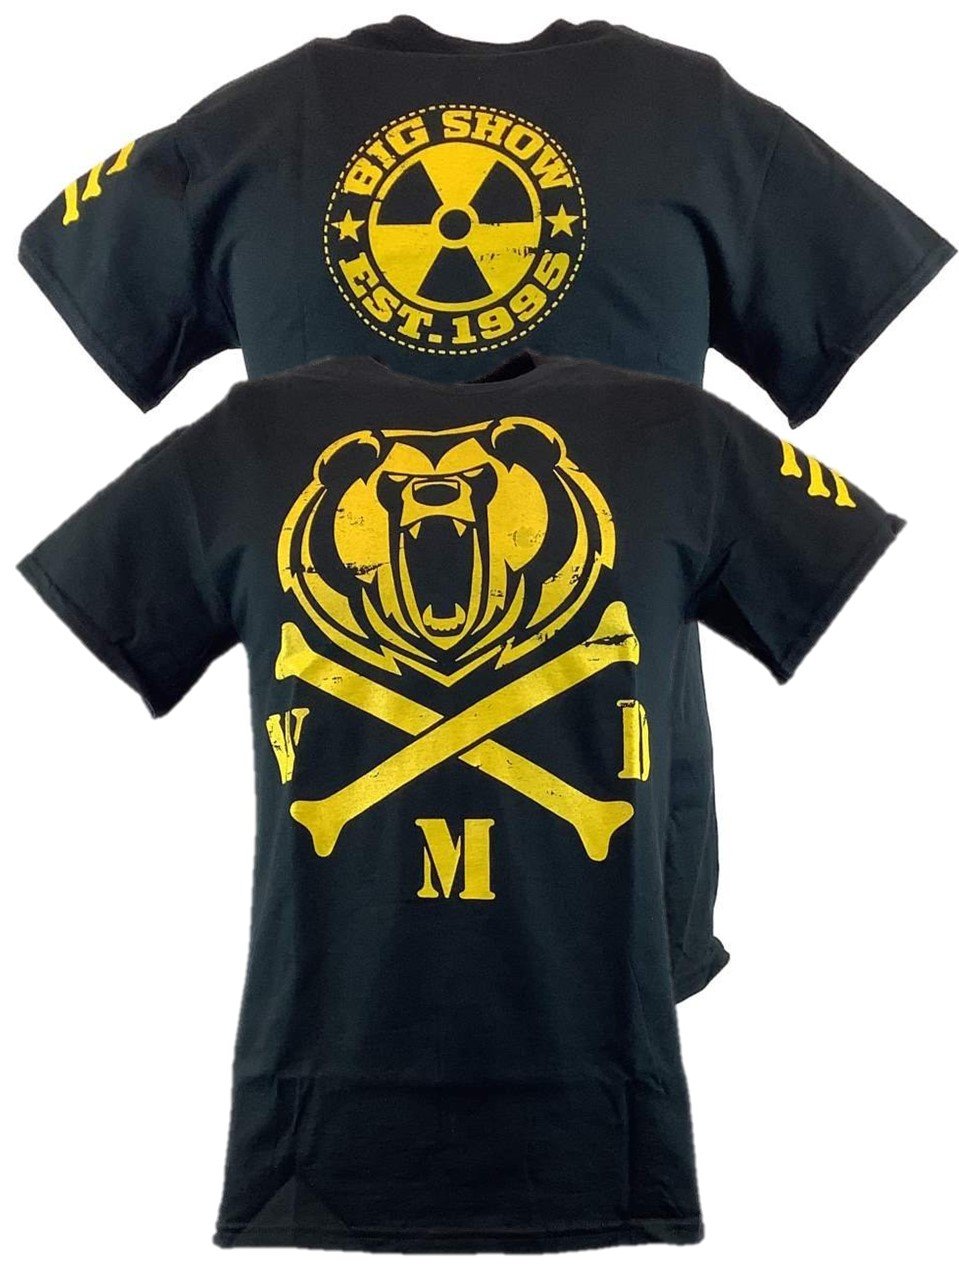 Big Show Cross Bones WMD Mens Black T-shirt